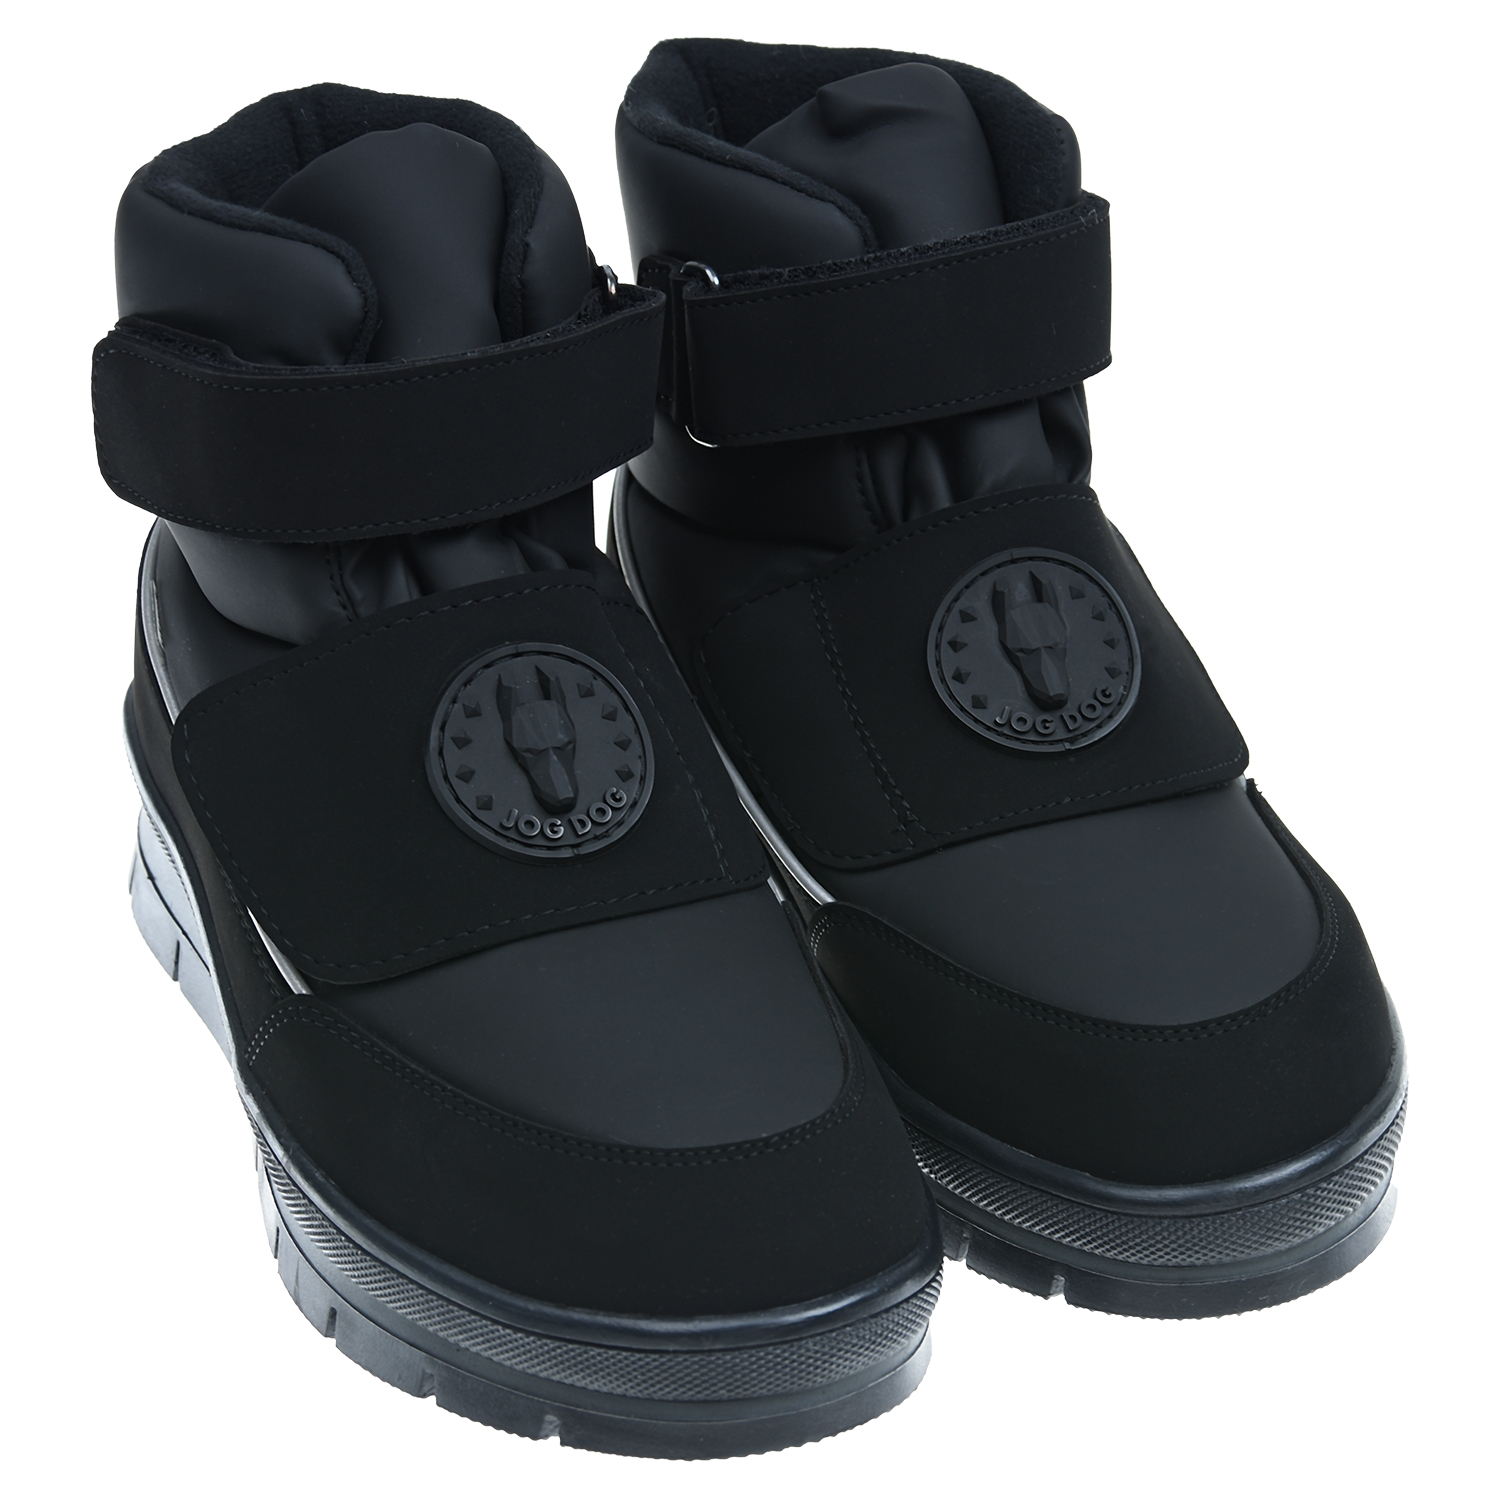 Черные мембранные сапоги Jog Dog детские, размер 34, цвет черный